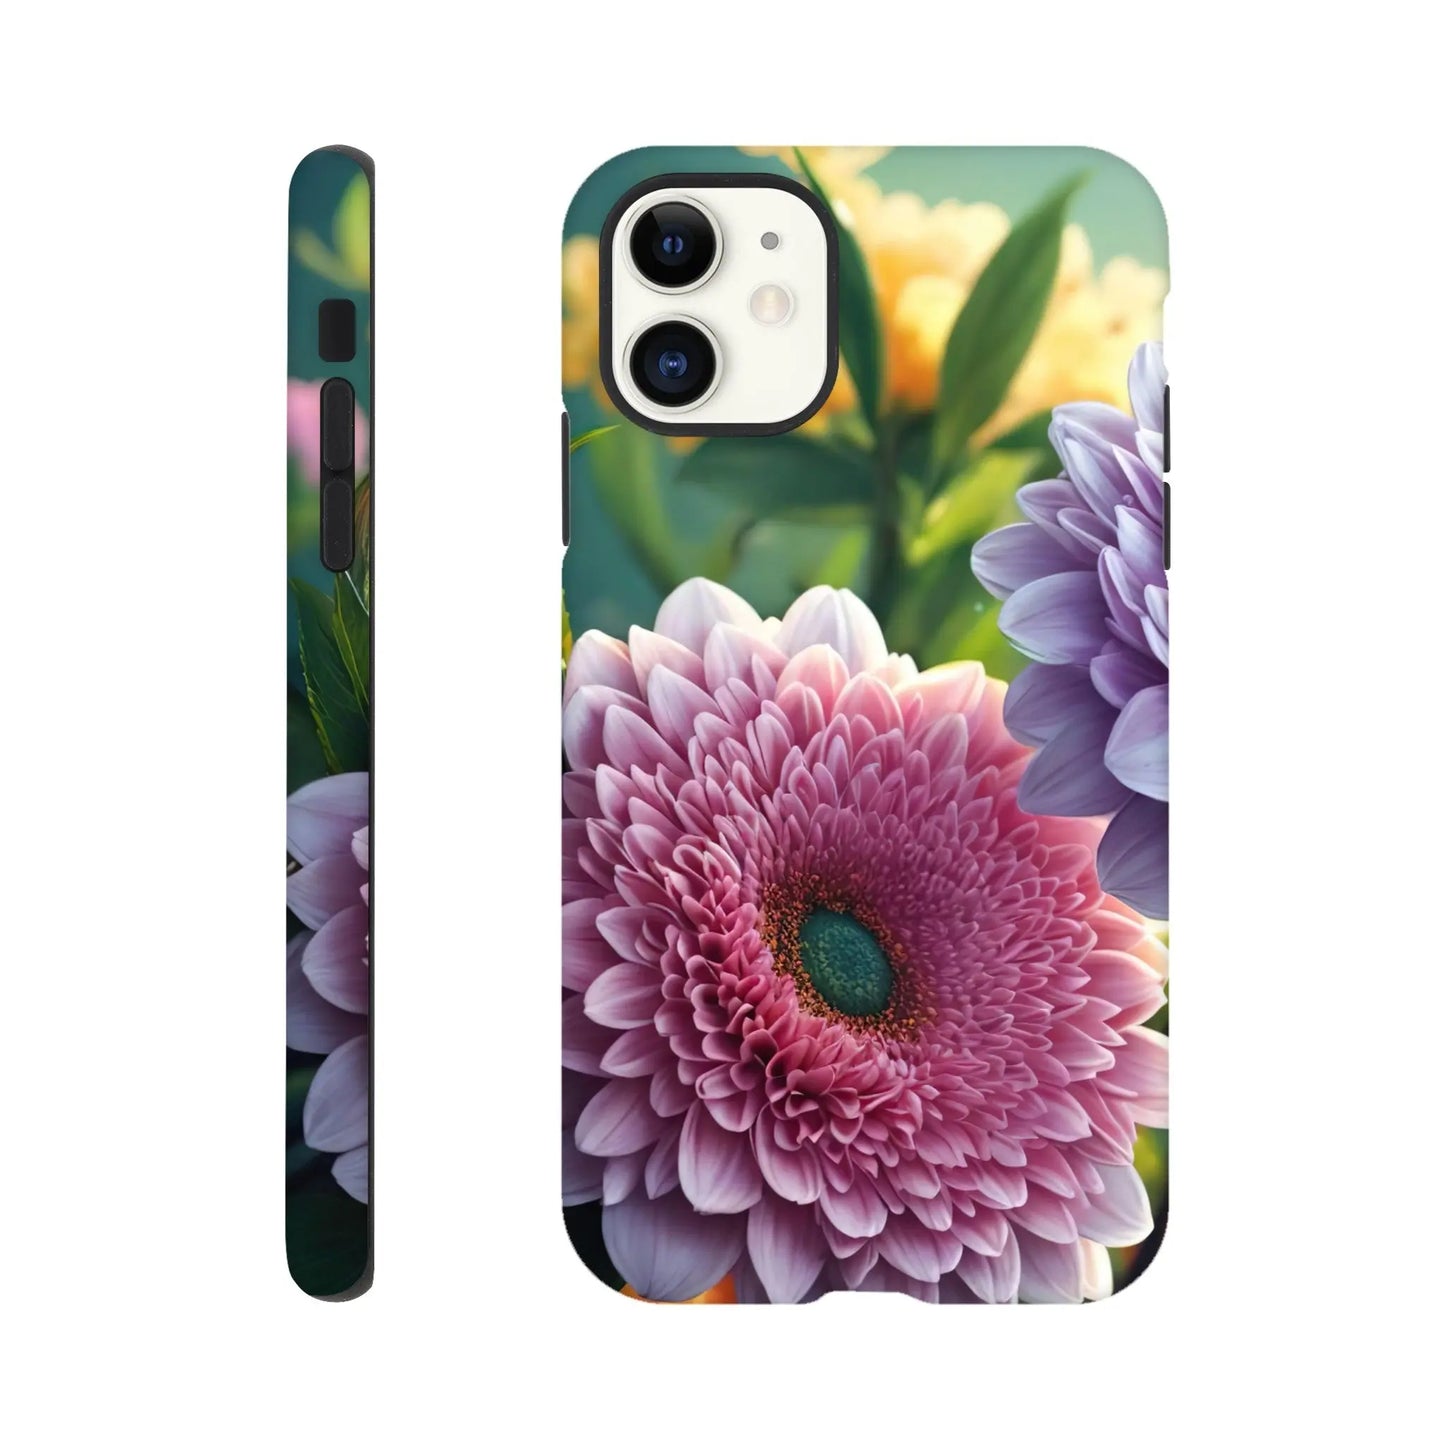 Smartphone-Hülle "Hart" - Blumen Vielfalt - Foto Stil, KI-Kunst, Pflanzen, iPhone-11 - RolConArt